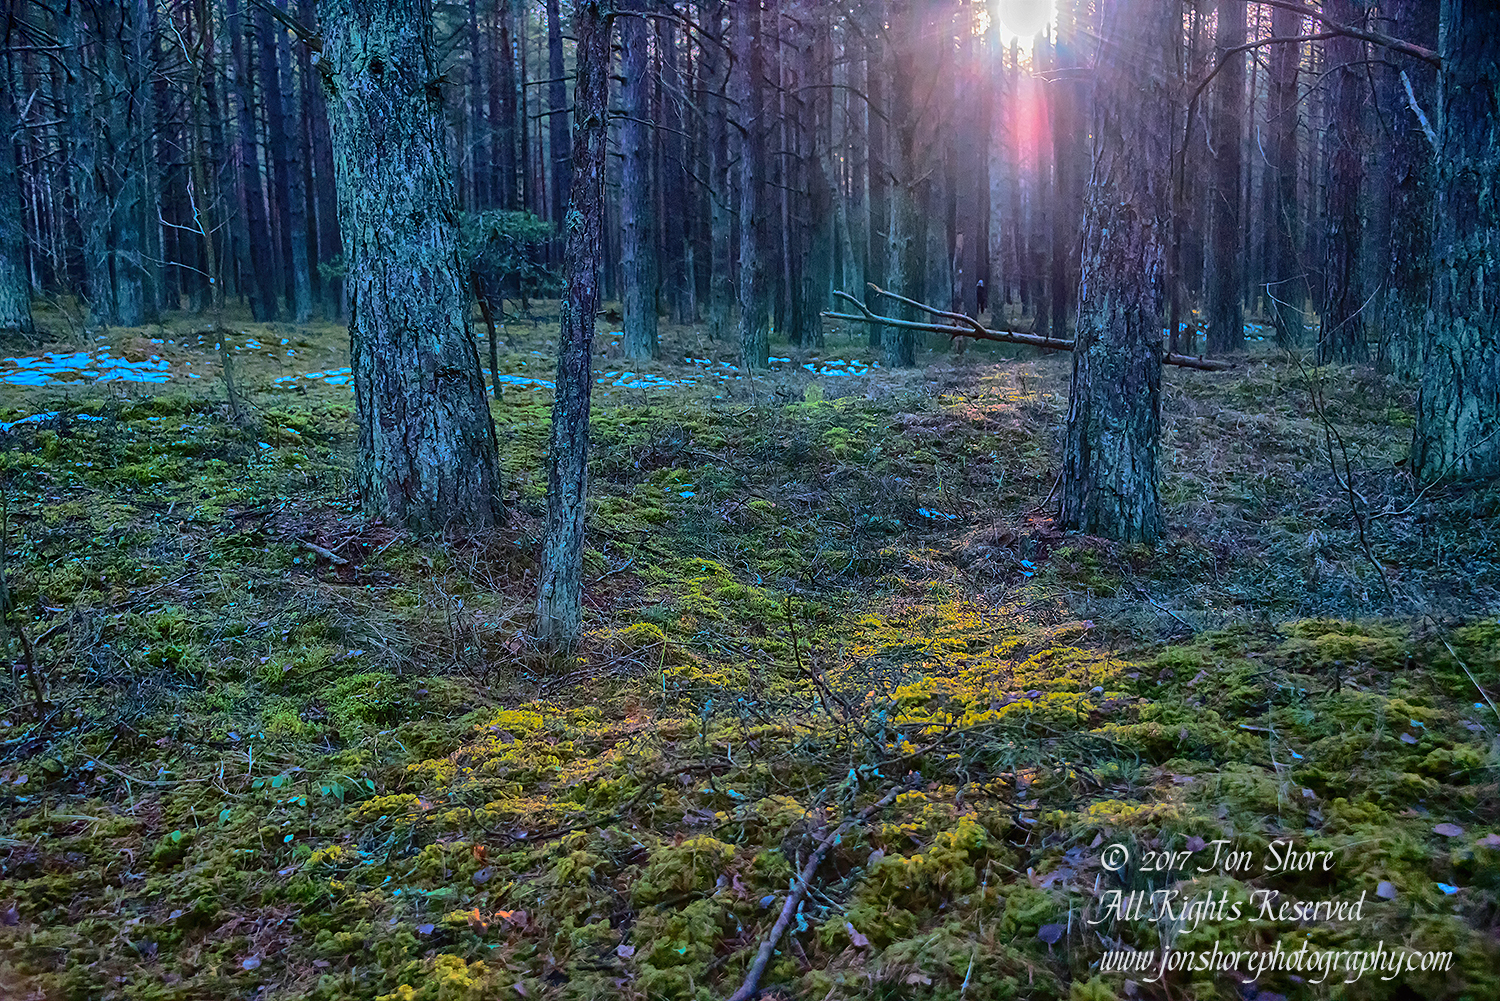 Lielupe Forest in Winter. Nikkor 35mm